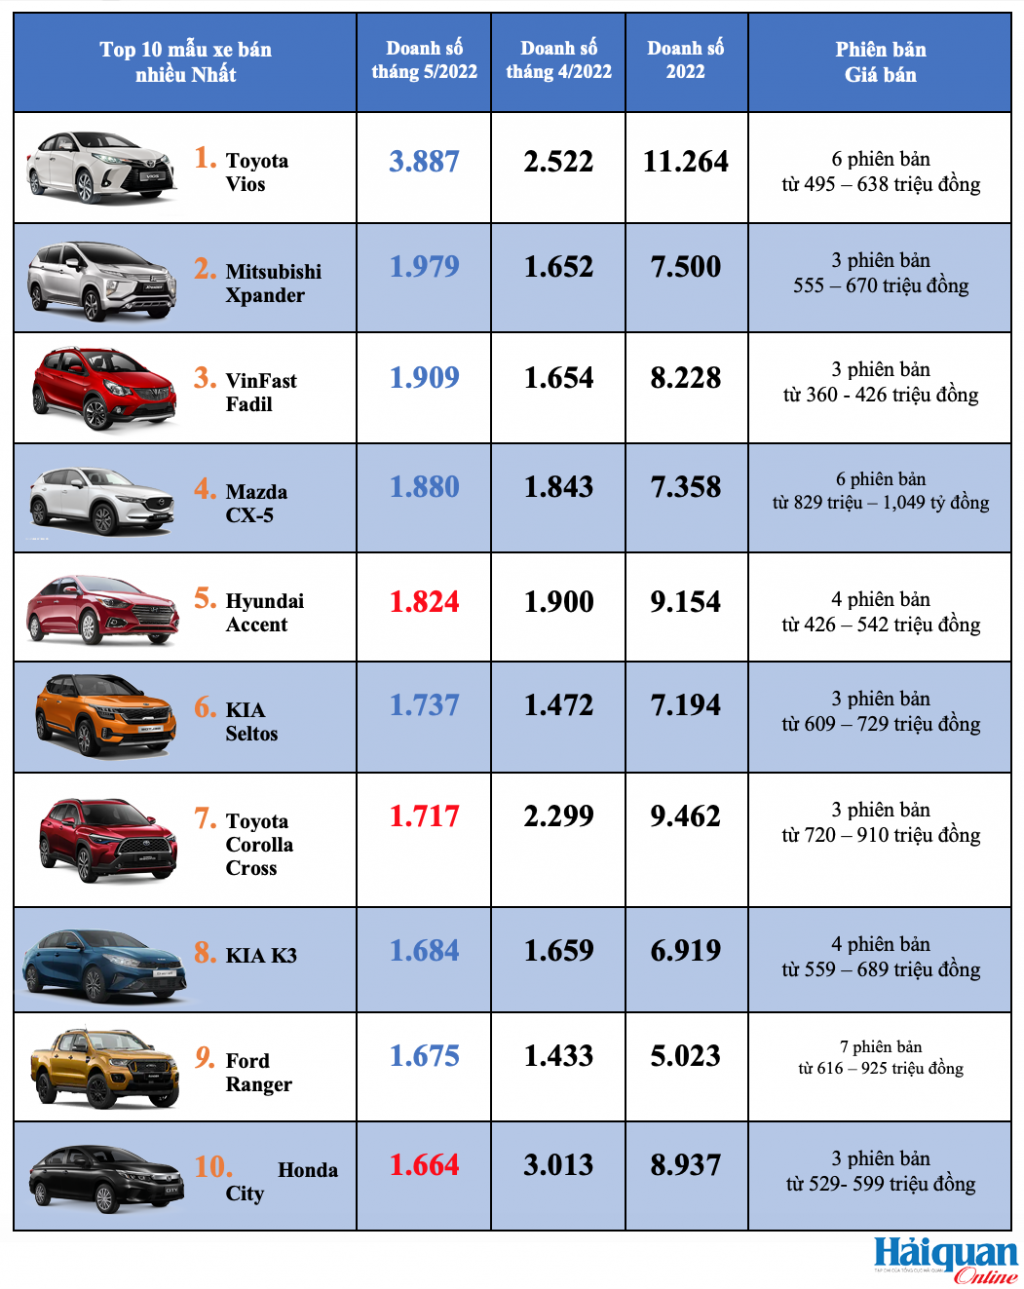 Top 10 mẫu xe bán nhiều nhất tháng 5/2022 – Xe lắp ráp trong nước chiếm ưu thế